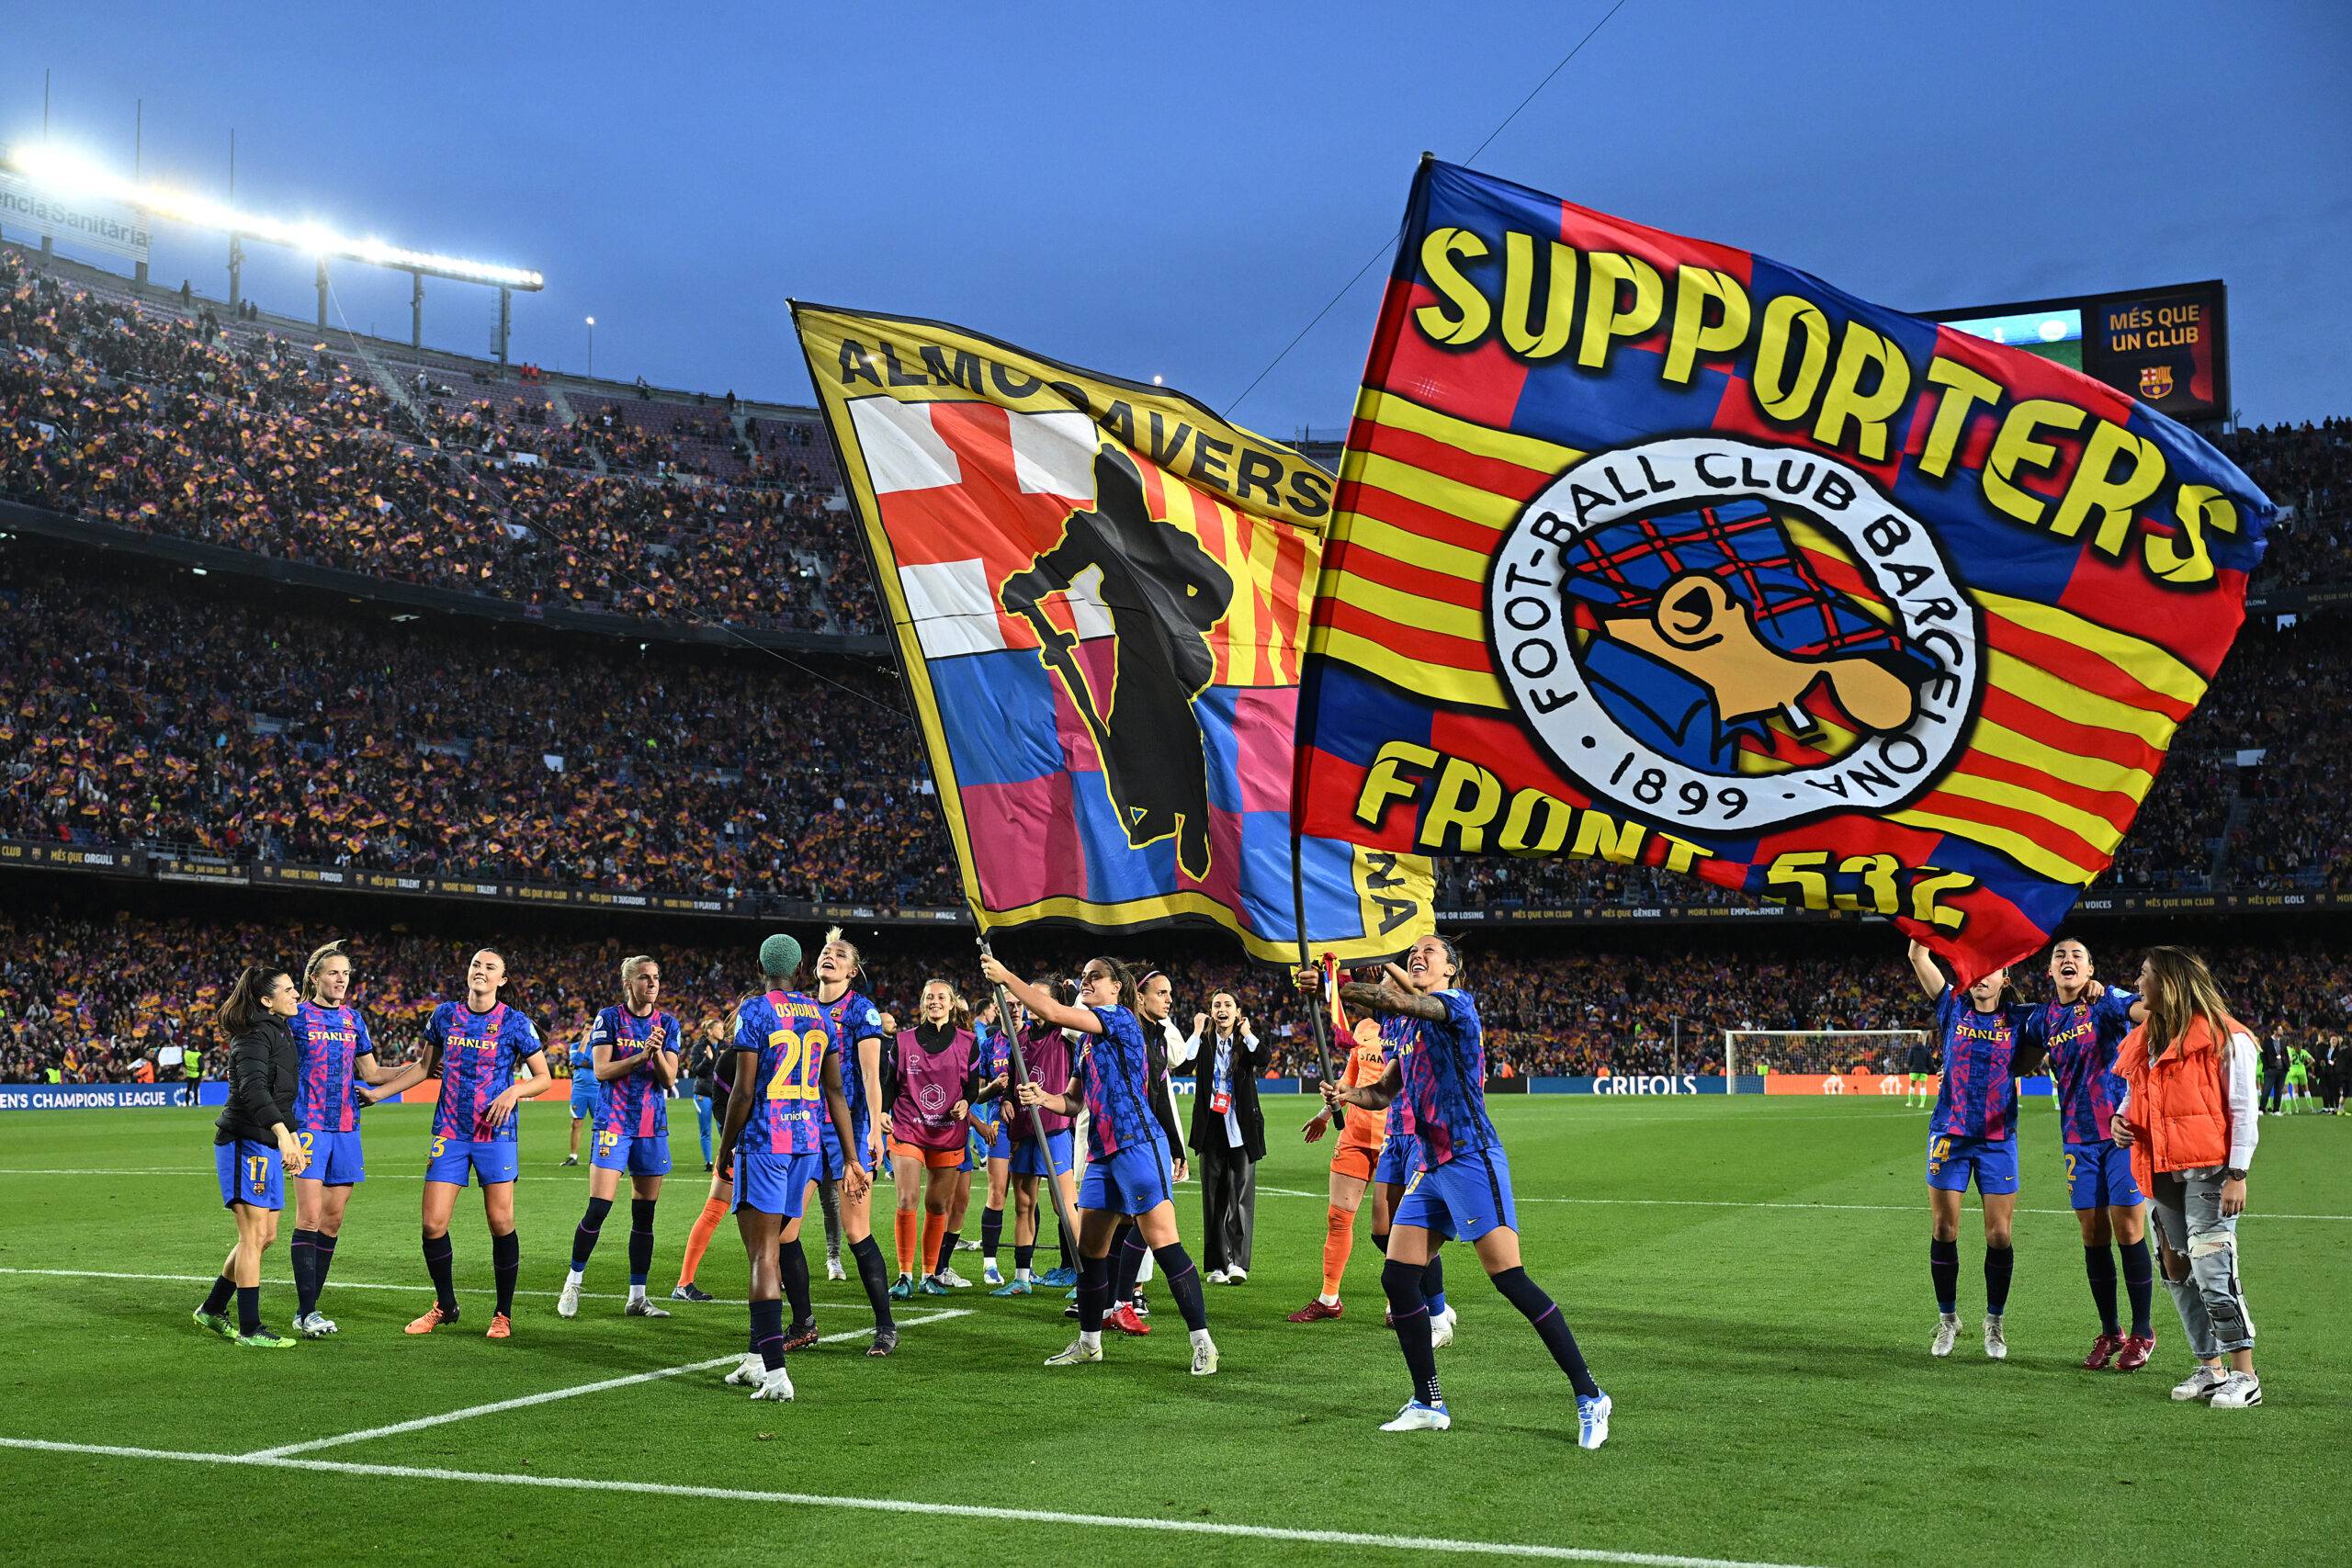 Barcelona at Camp Nou